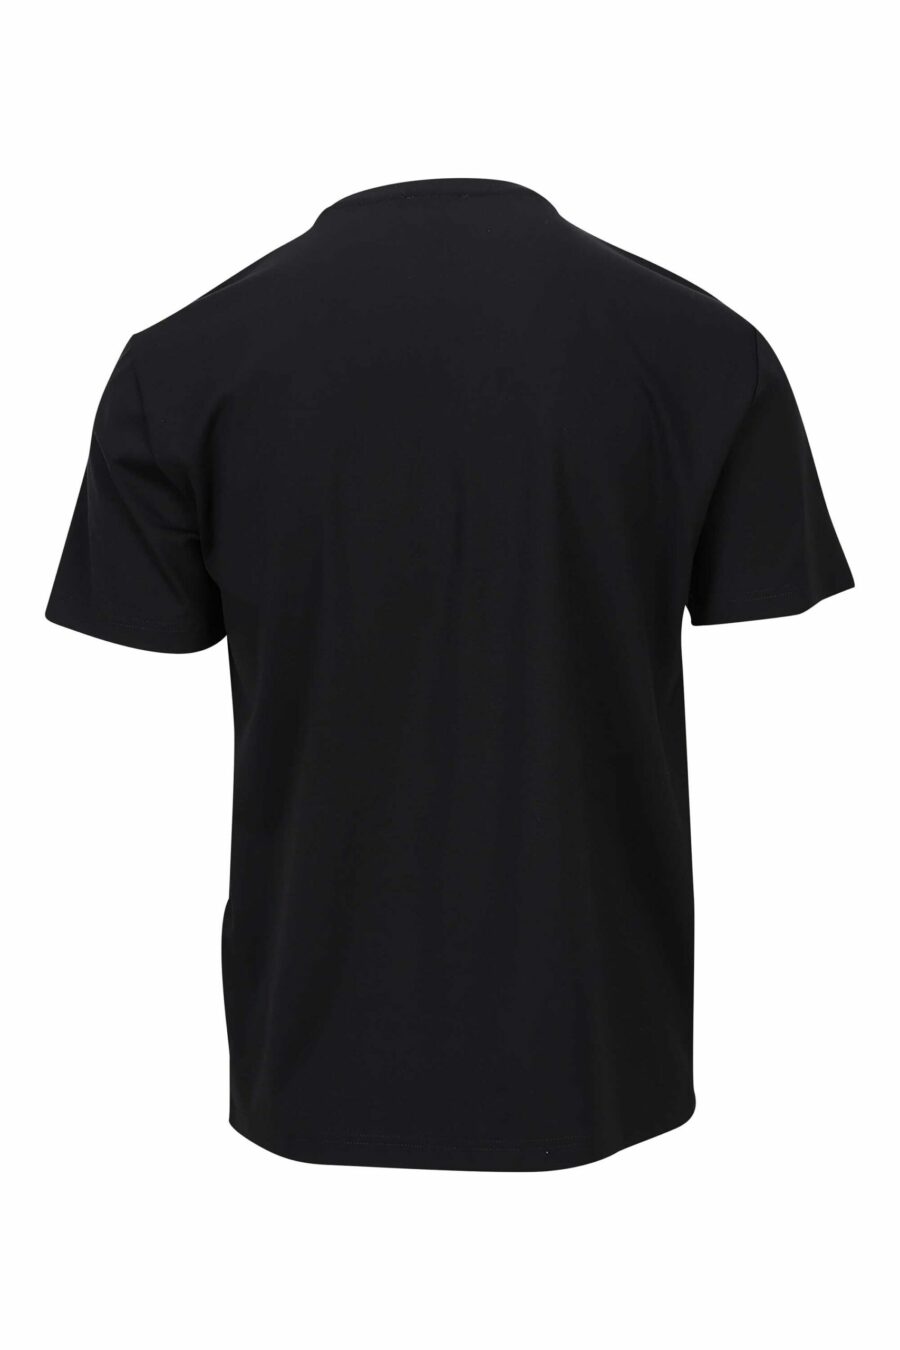 T-shirt preta com maxilogo monocromático "lux identity" - 8057767688646 1 à escala